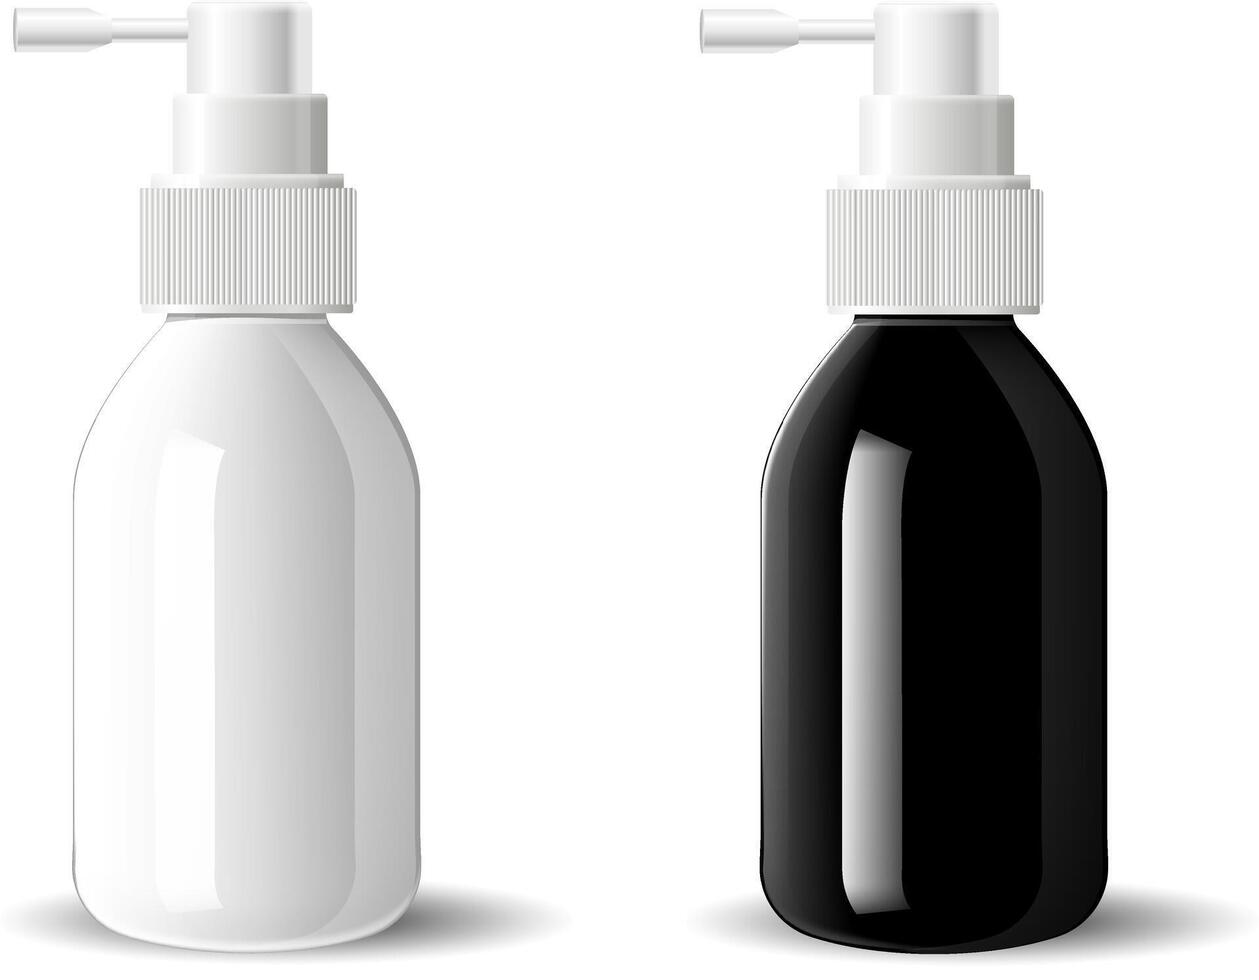 zwart en wit glas gehydrateerd verstuiven kunstmatig flessen bespotten omhoog set. vector illustratie. blanco sjabloon voor uw ontwerp. dispenser verstuiven inhalator deksel container. geïsoleerd medisch Product.